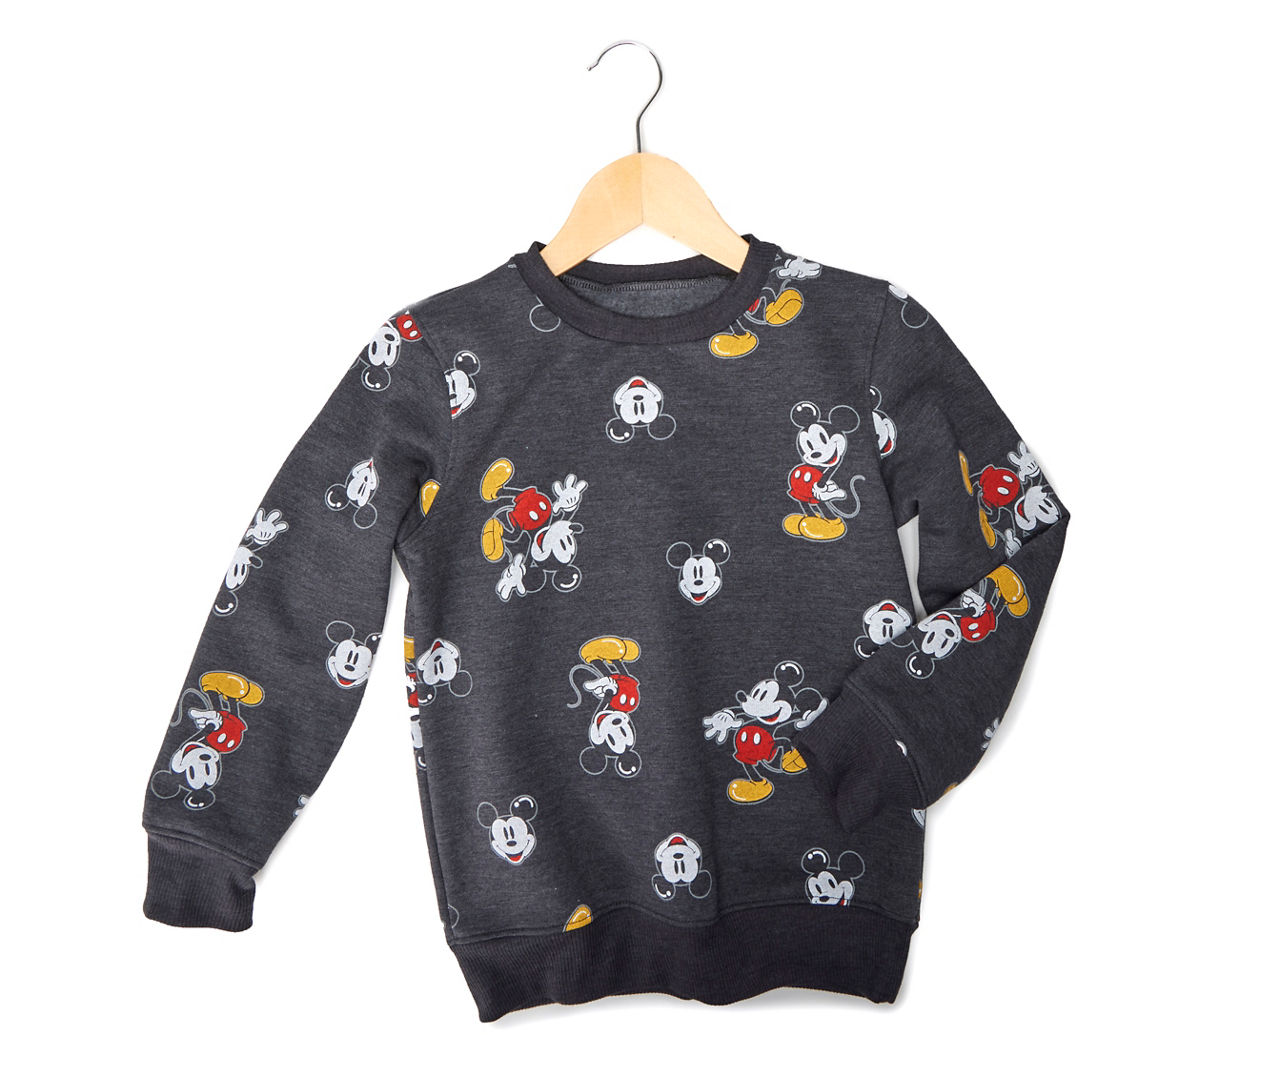 Kids' Size 7 Charcoal Heather Mickey Toon Toss Fleece Sweatshirt